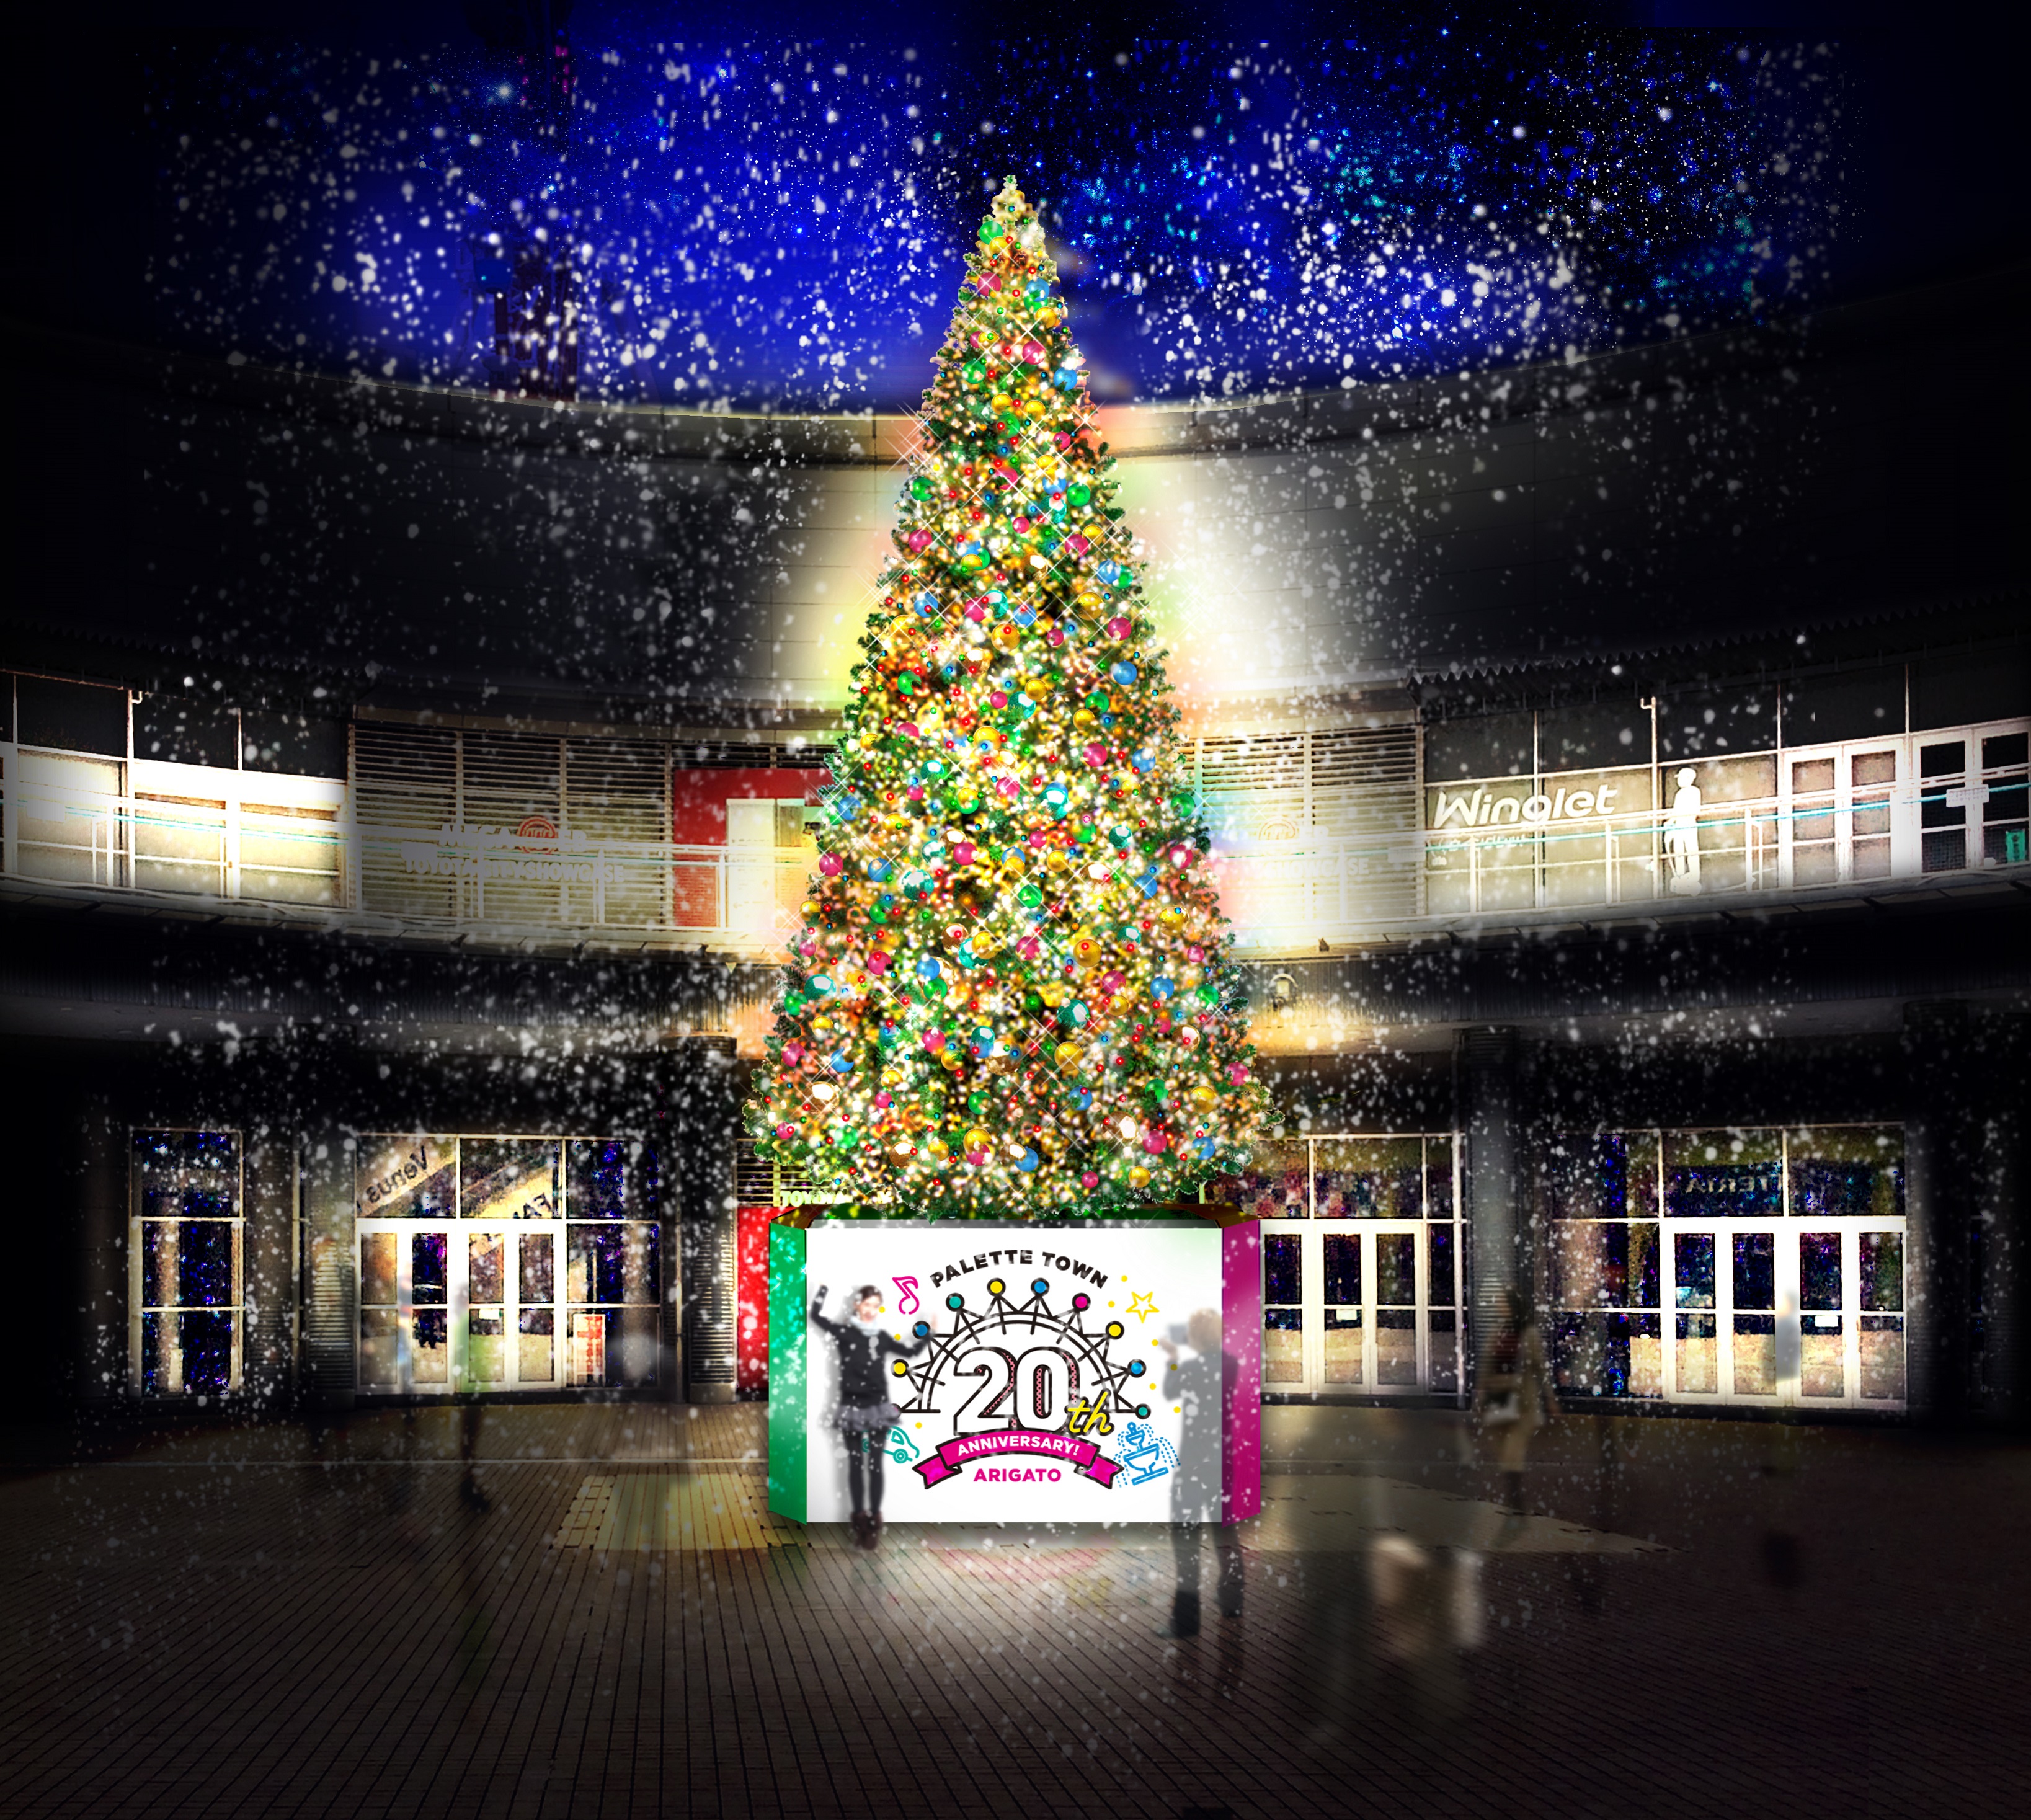 パレットプラザに約10メートルの巨大クリスマスツリー Welcome Heart Tree が登場 19年11月1日 金 12月25日 水 臨海副都心パレットタウン運営協議会のプレスリリース